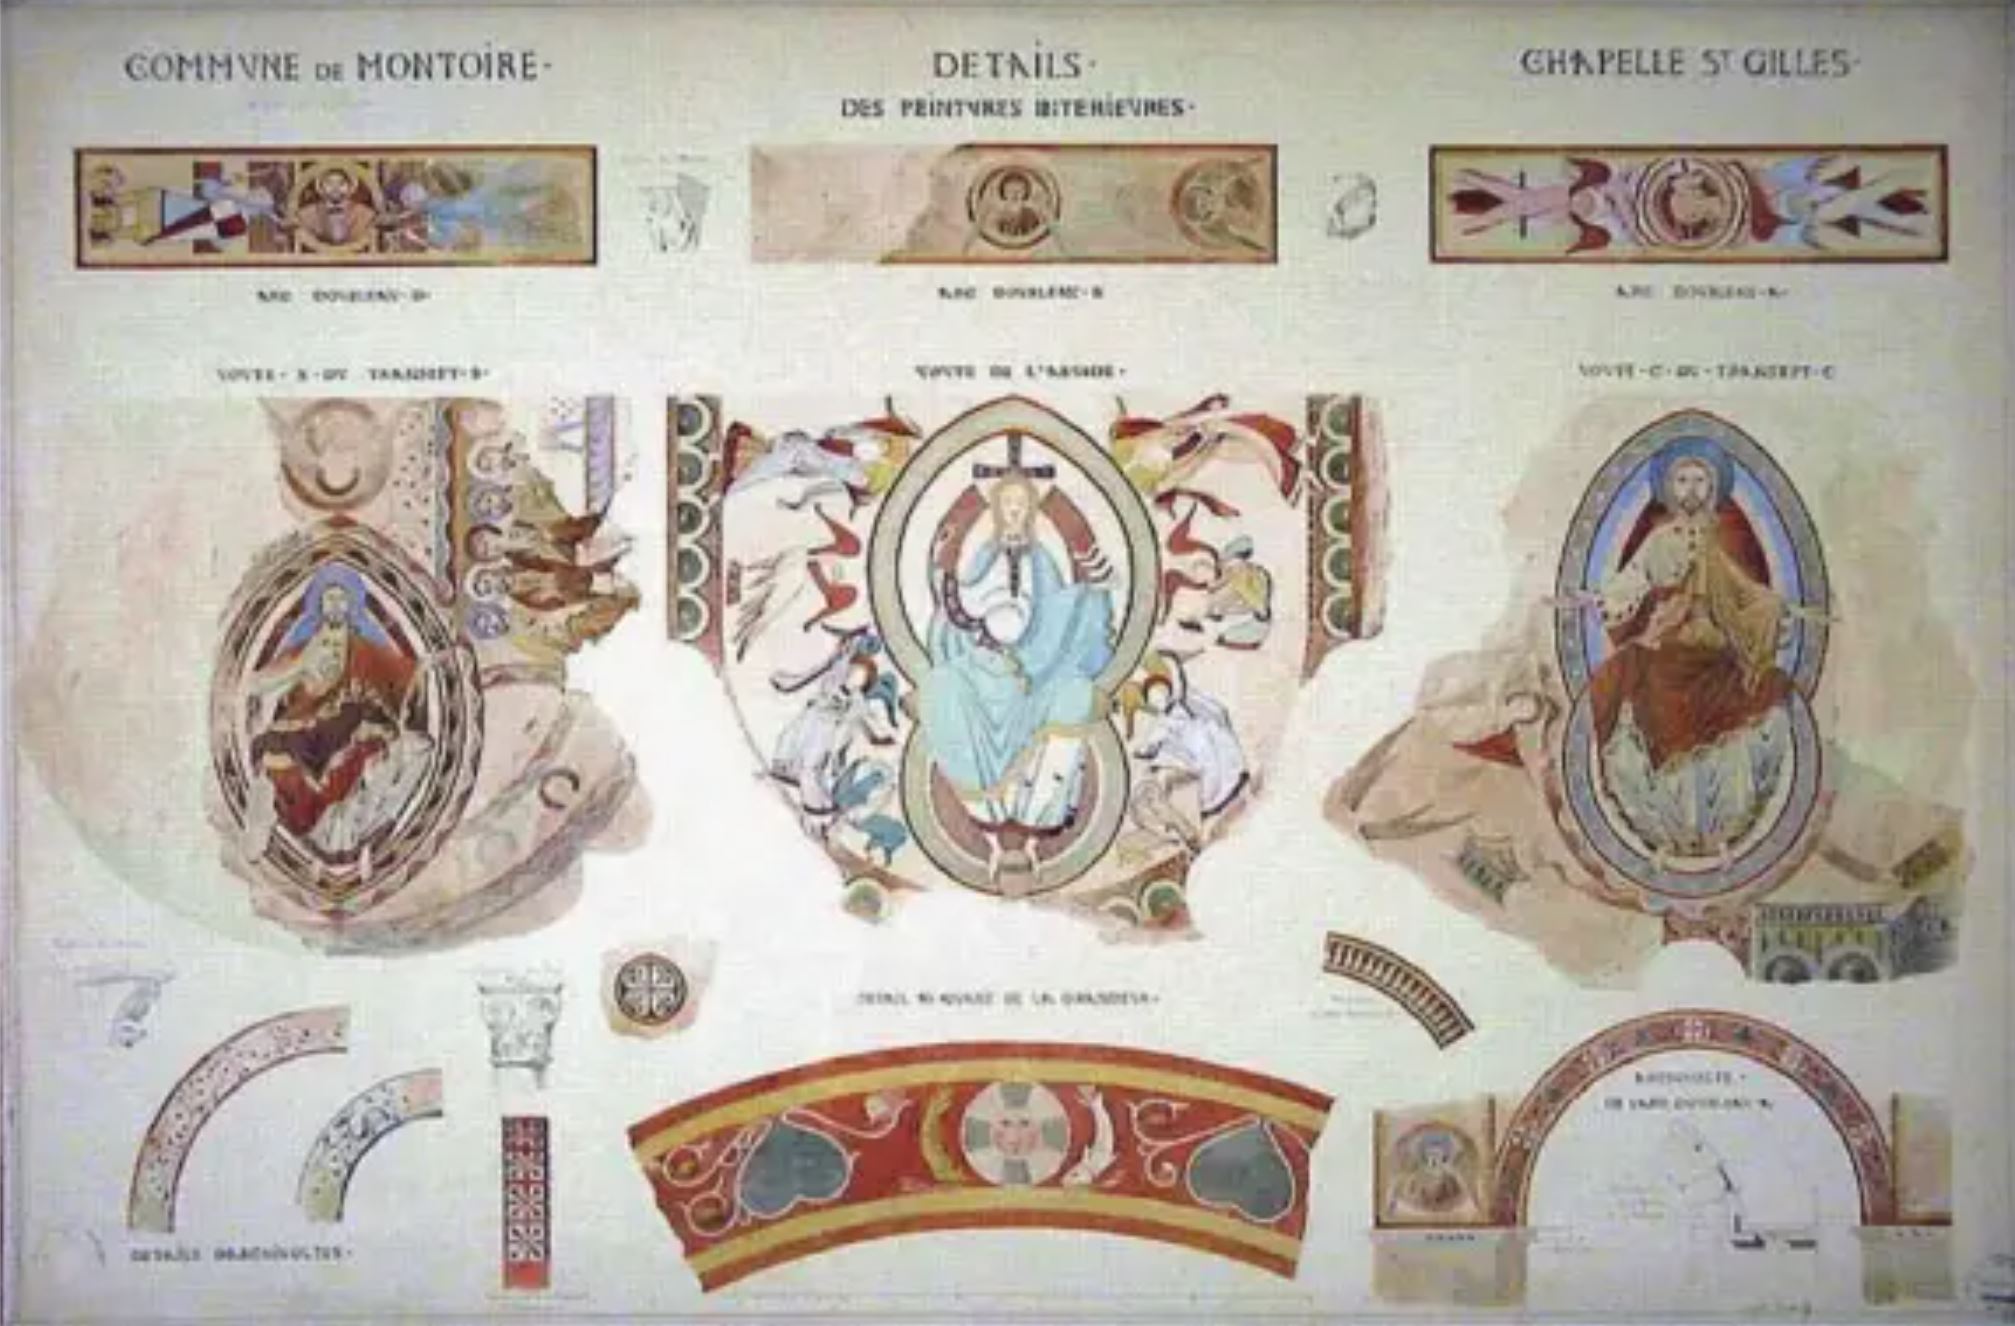 1100 ca Montoire chapelle-saint-gilles sud releve Breton 1851